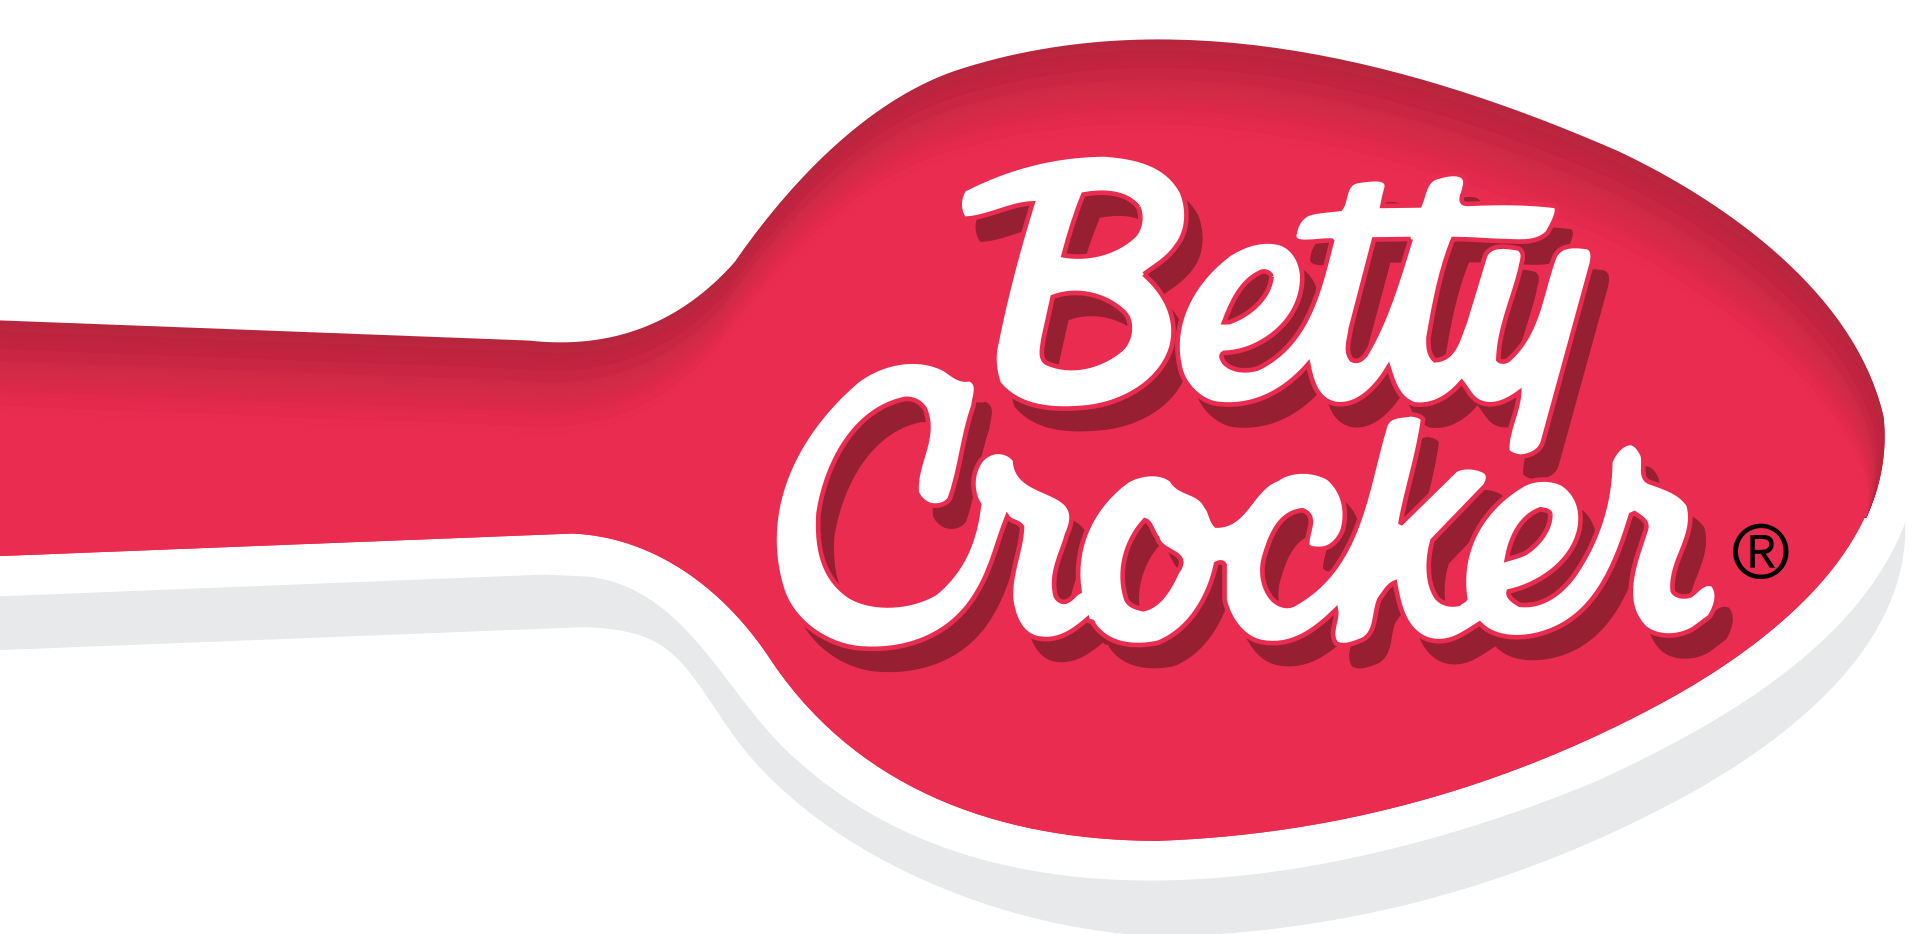 Betty Crocker Brand Logo